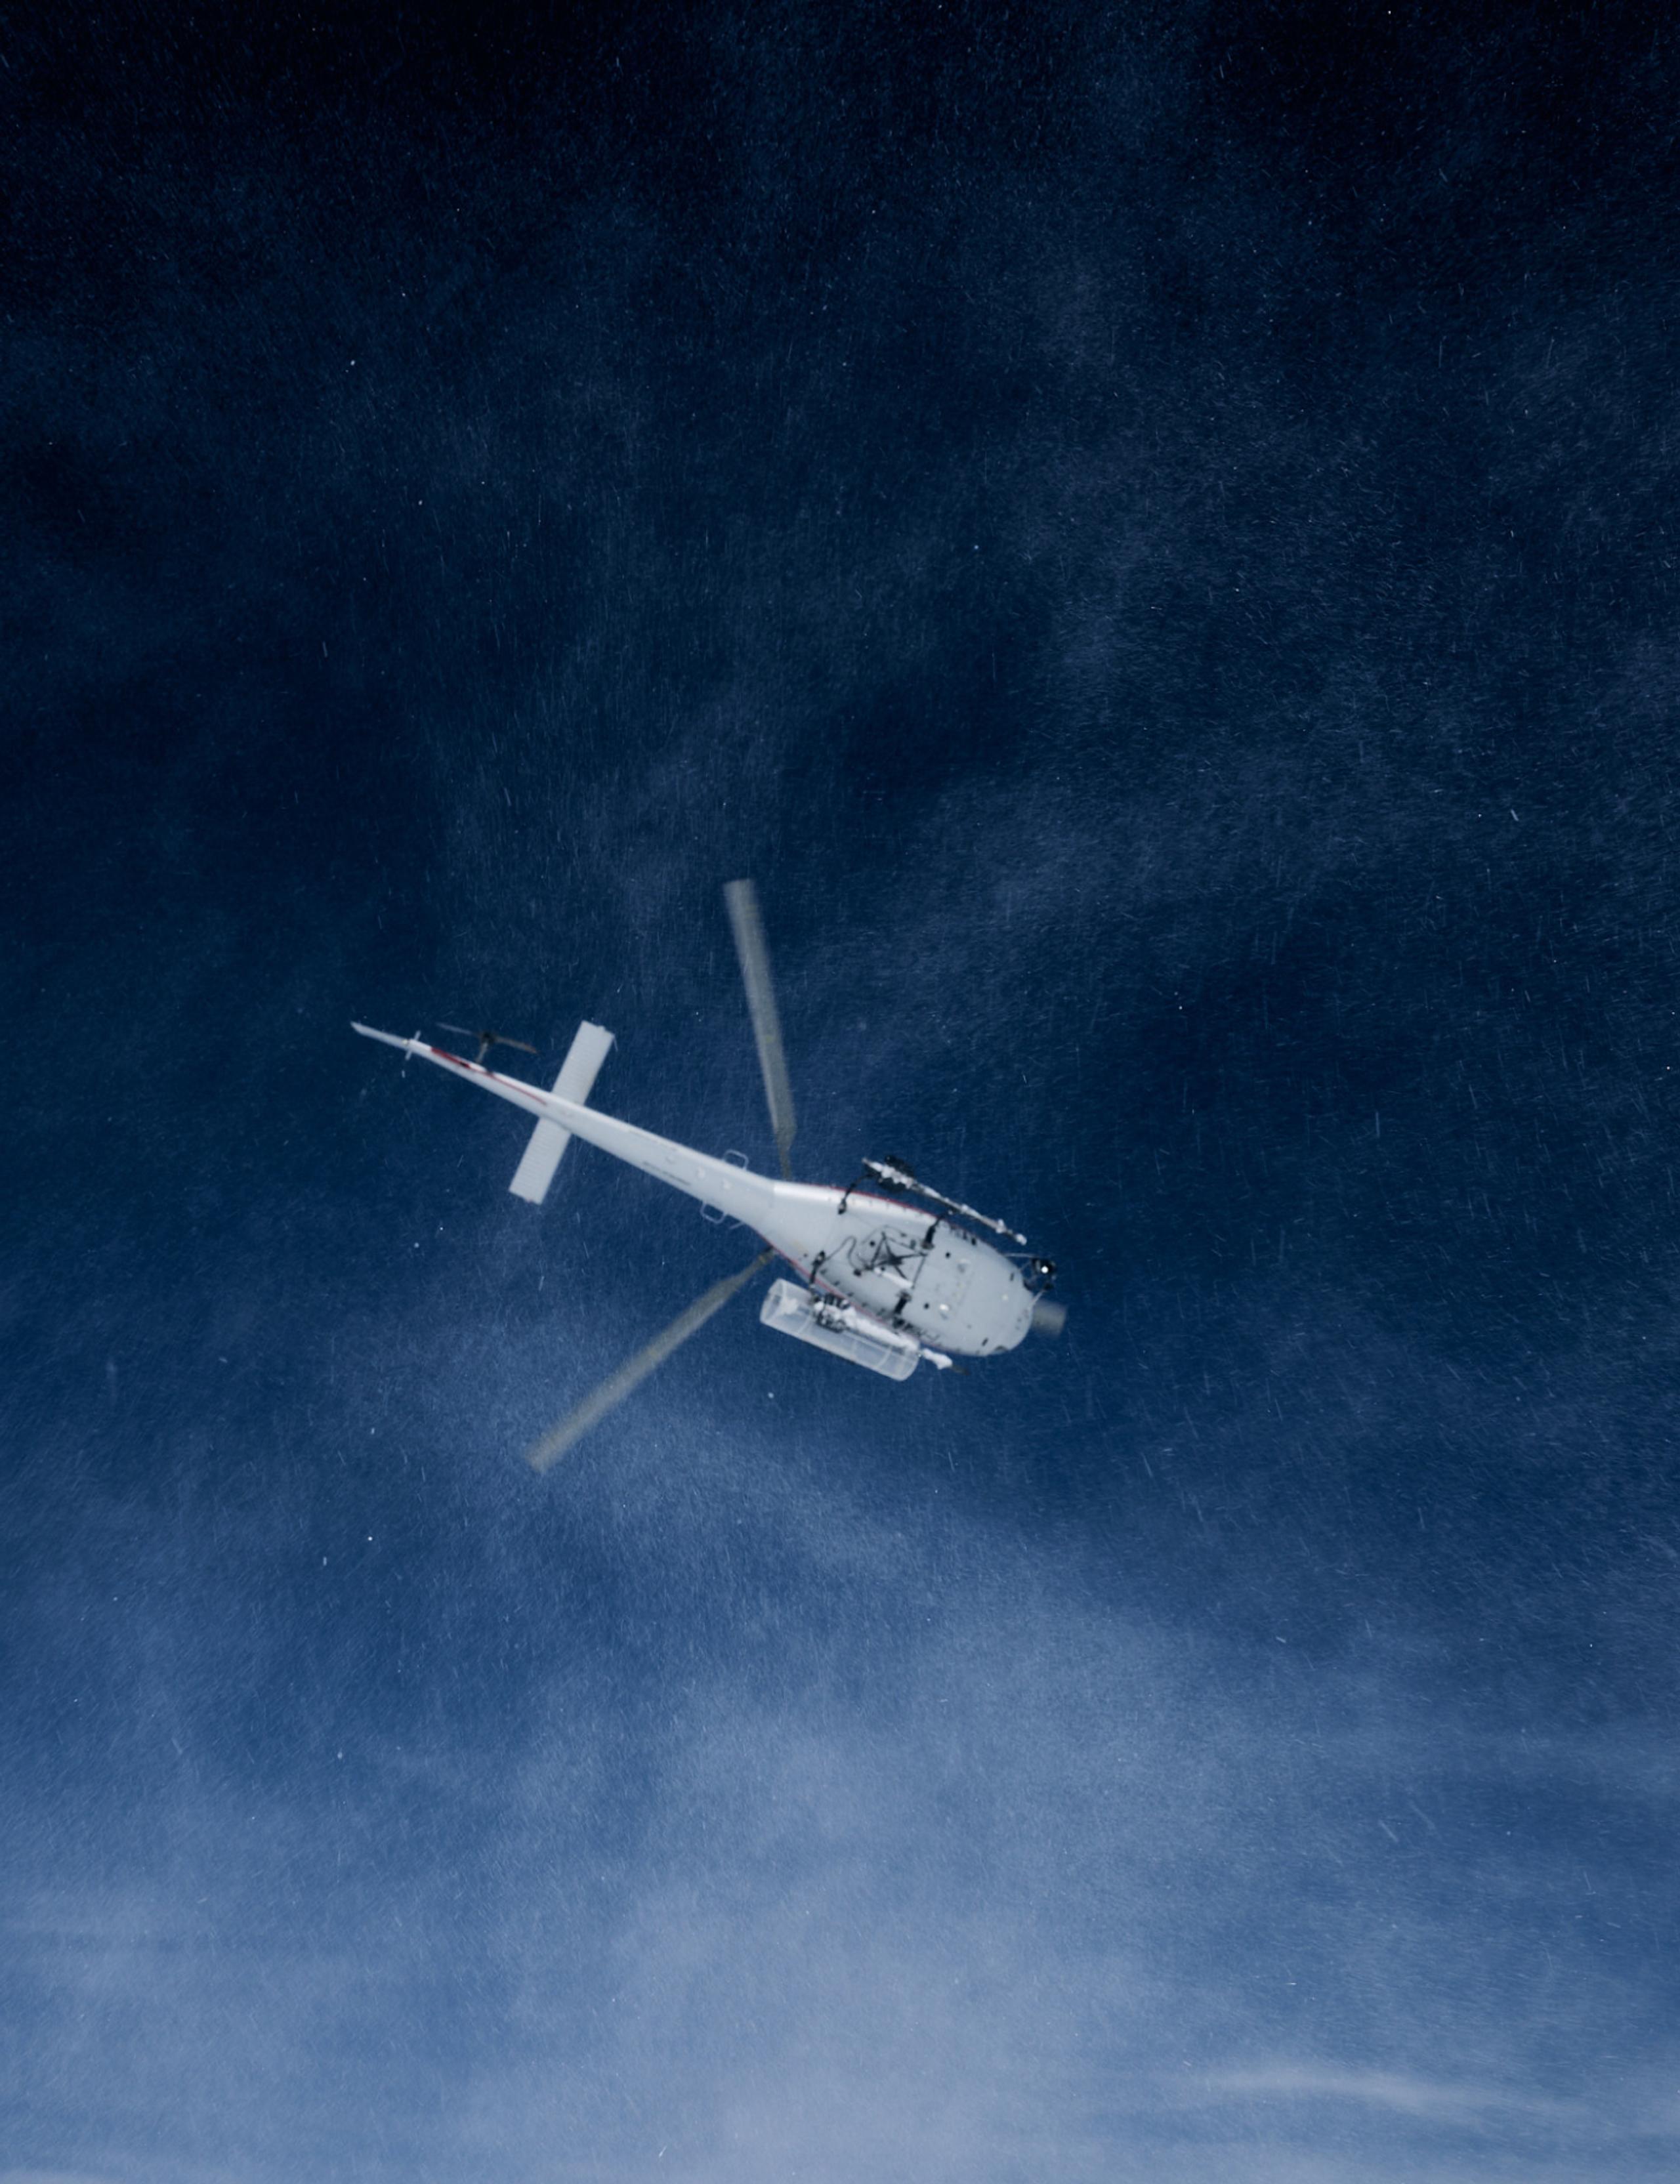 A chopper in the dark blue sky.